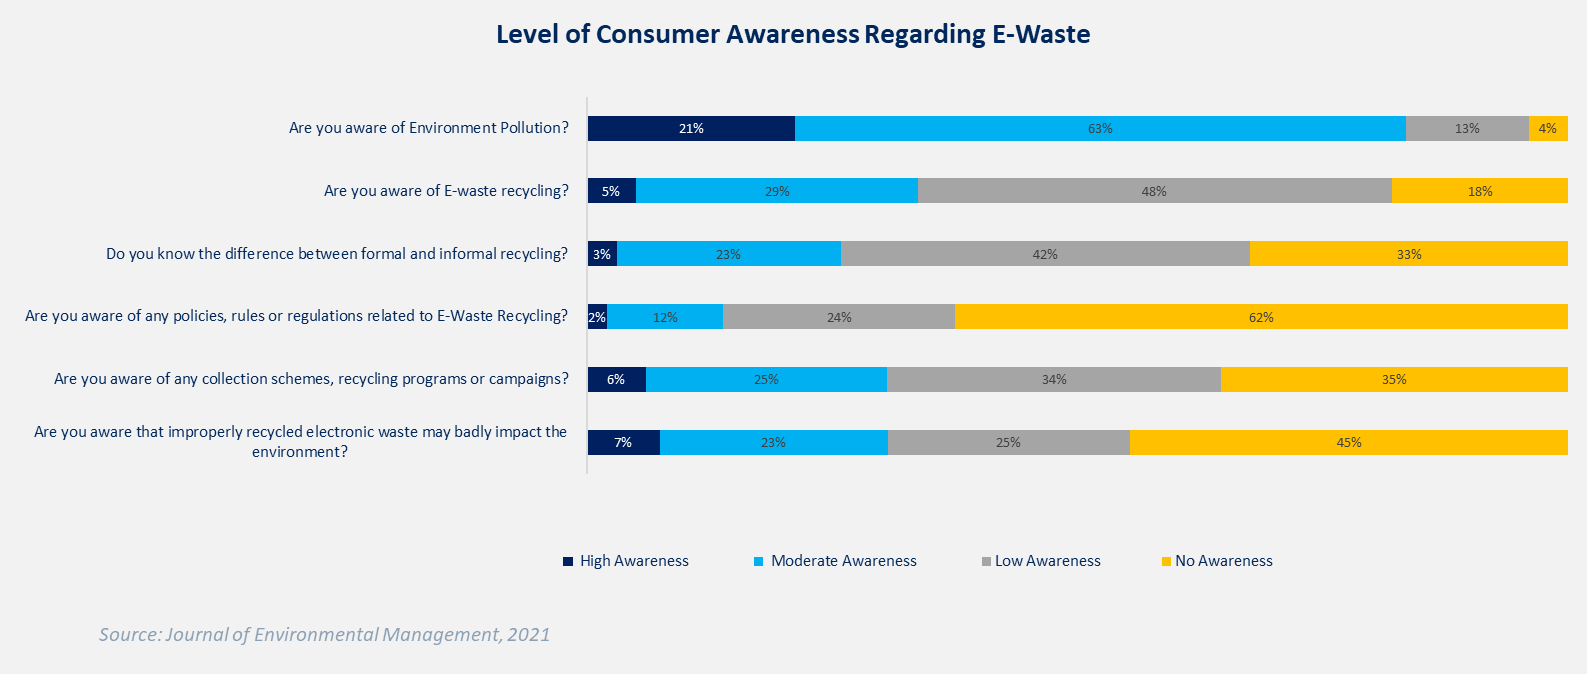 Fig. 4: Level of Consumer Awareness Regarding E-waste